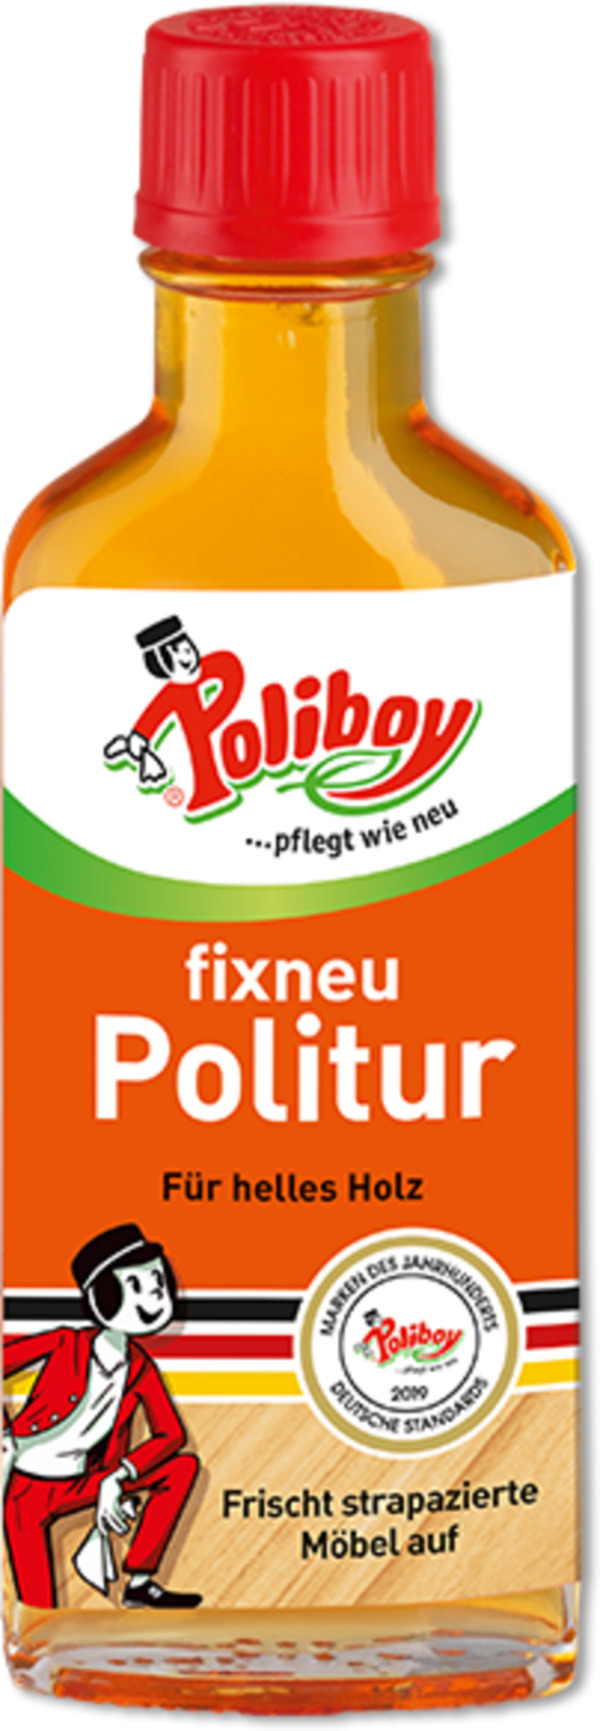 Bild 1 von Poliboy fixneu Politur hell, 100 ml